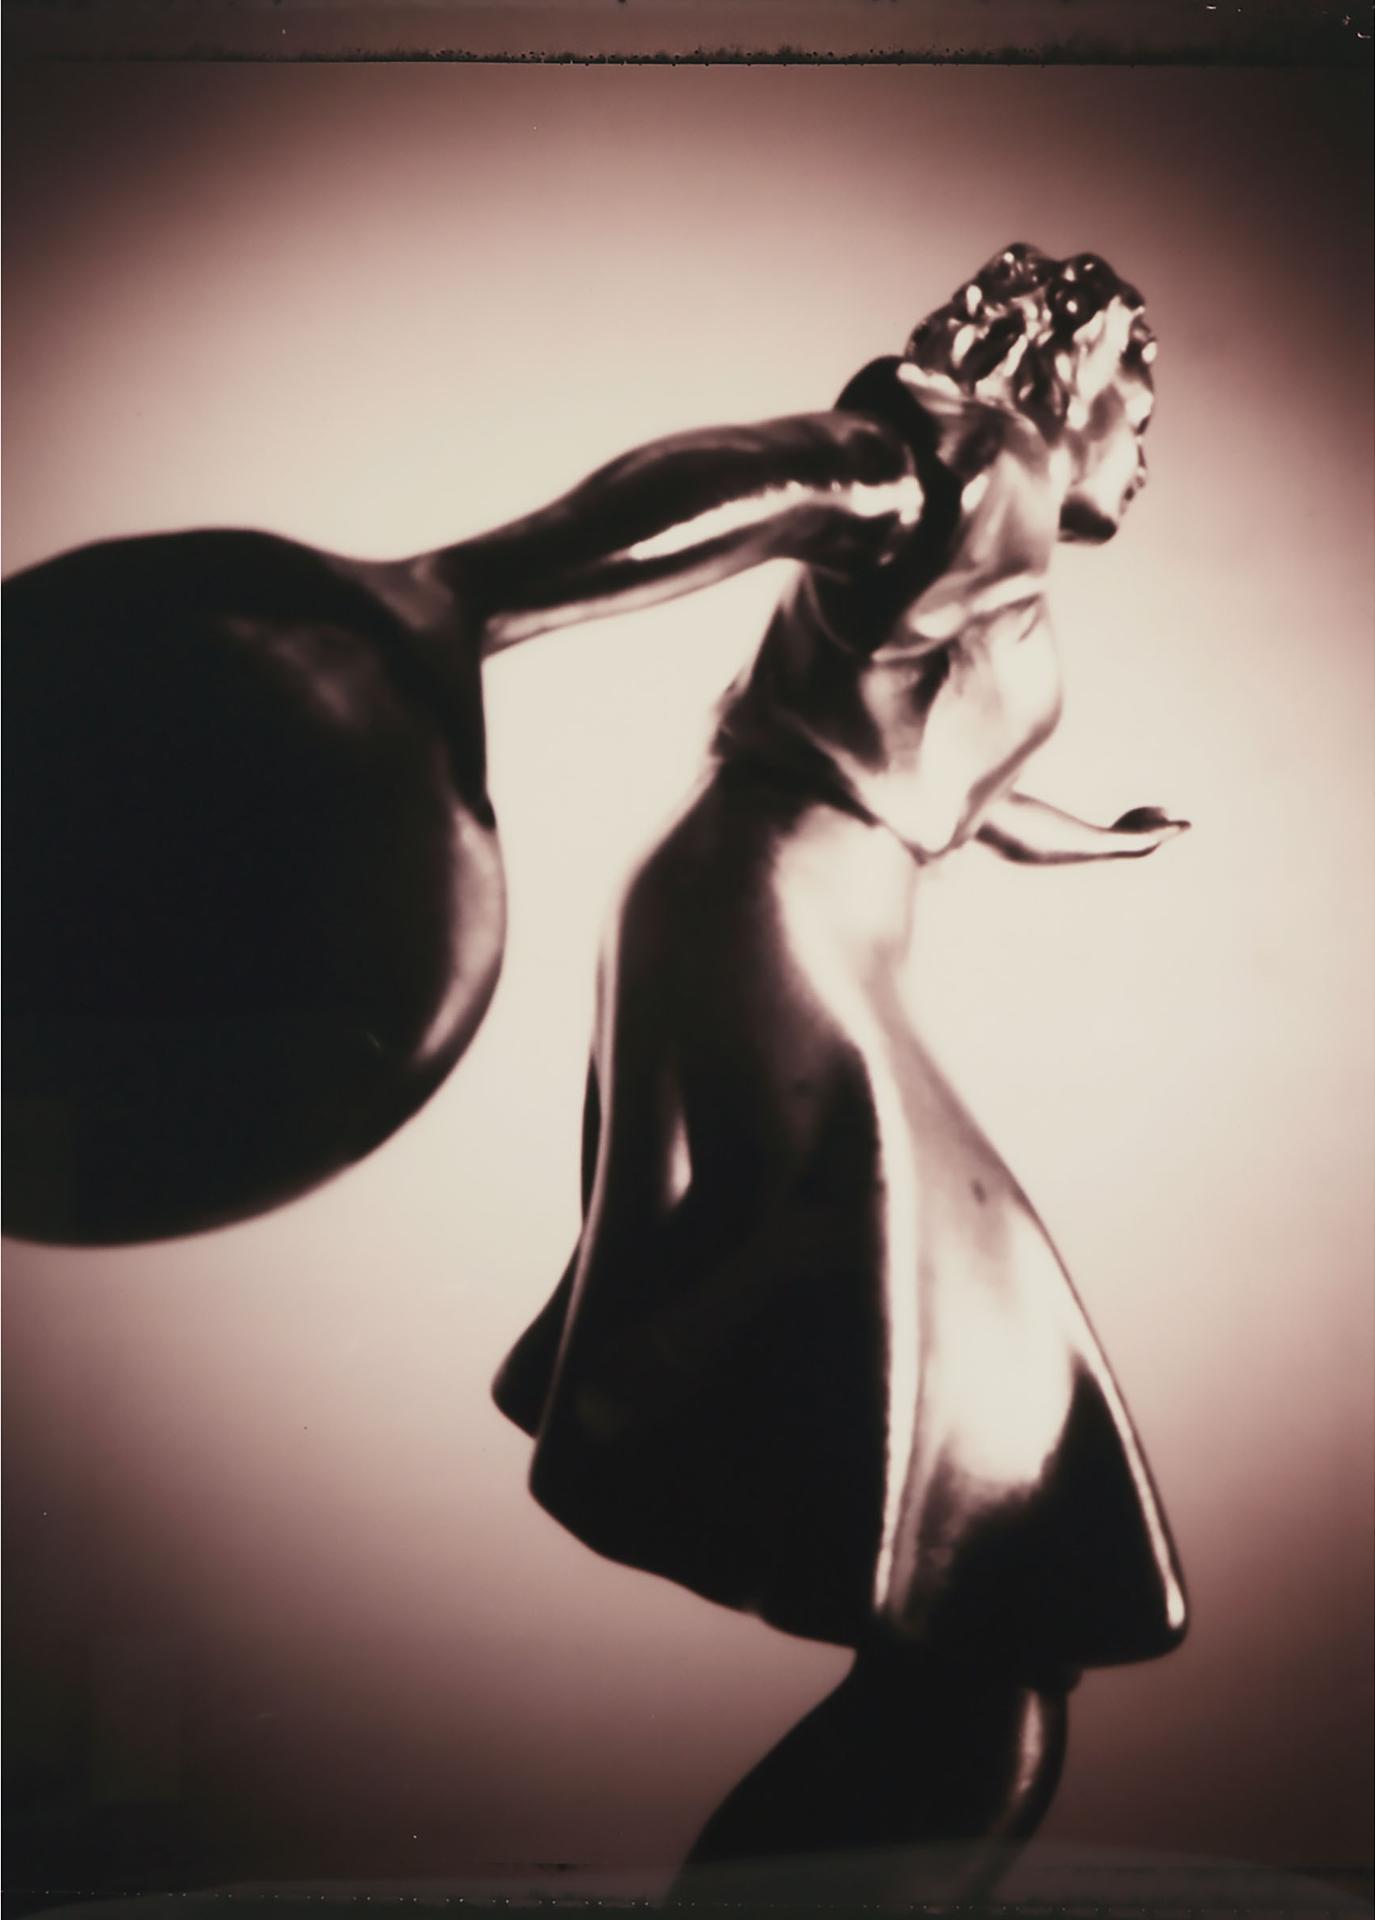 William Eakin (1952) - Monument Series, Bowler (Female), 1994